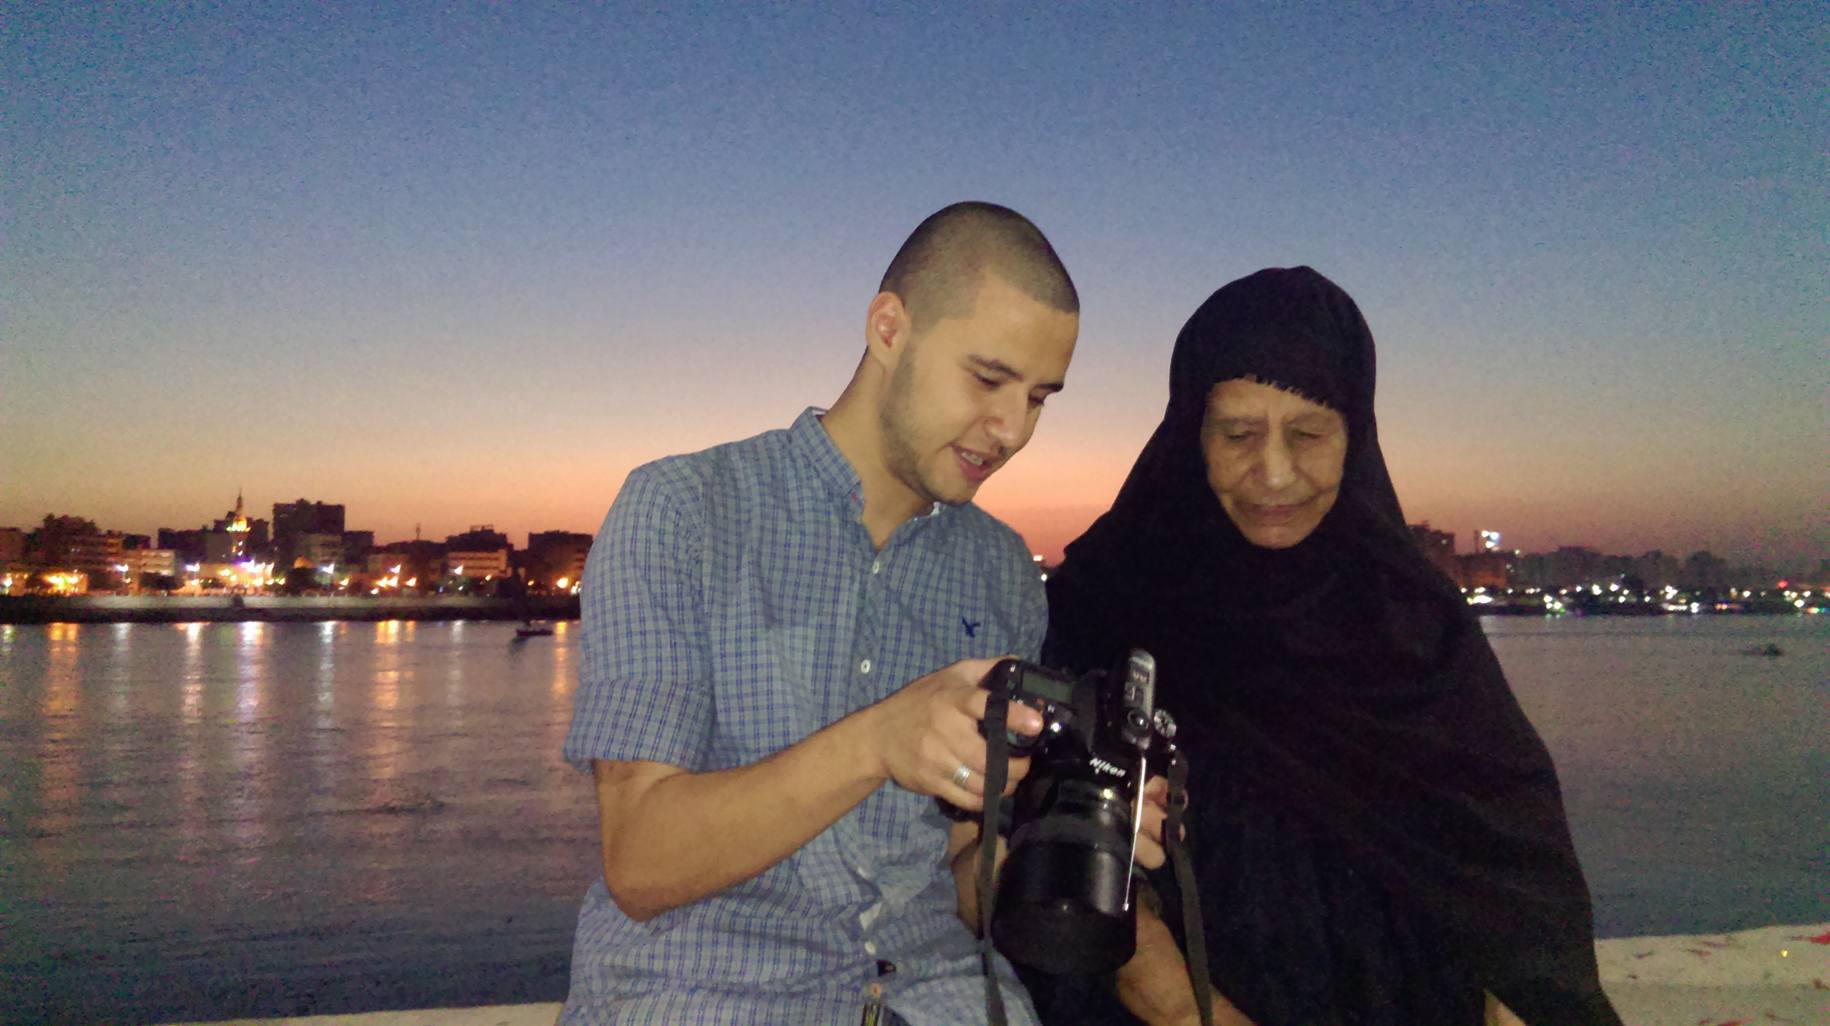 عبد الله مع الجدة بطلة الفوتوسيشن